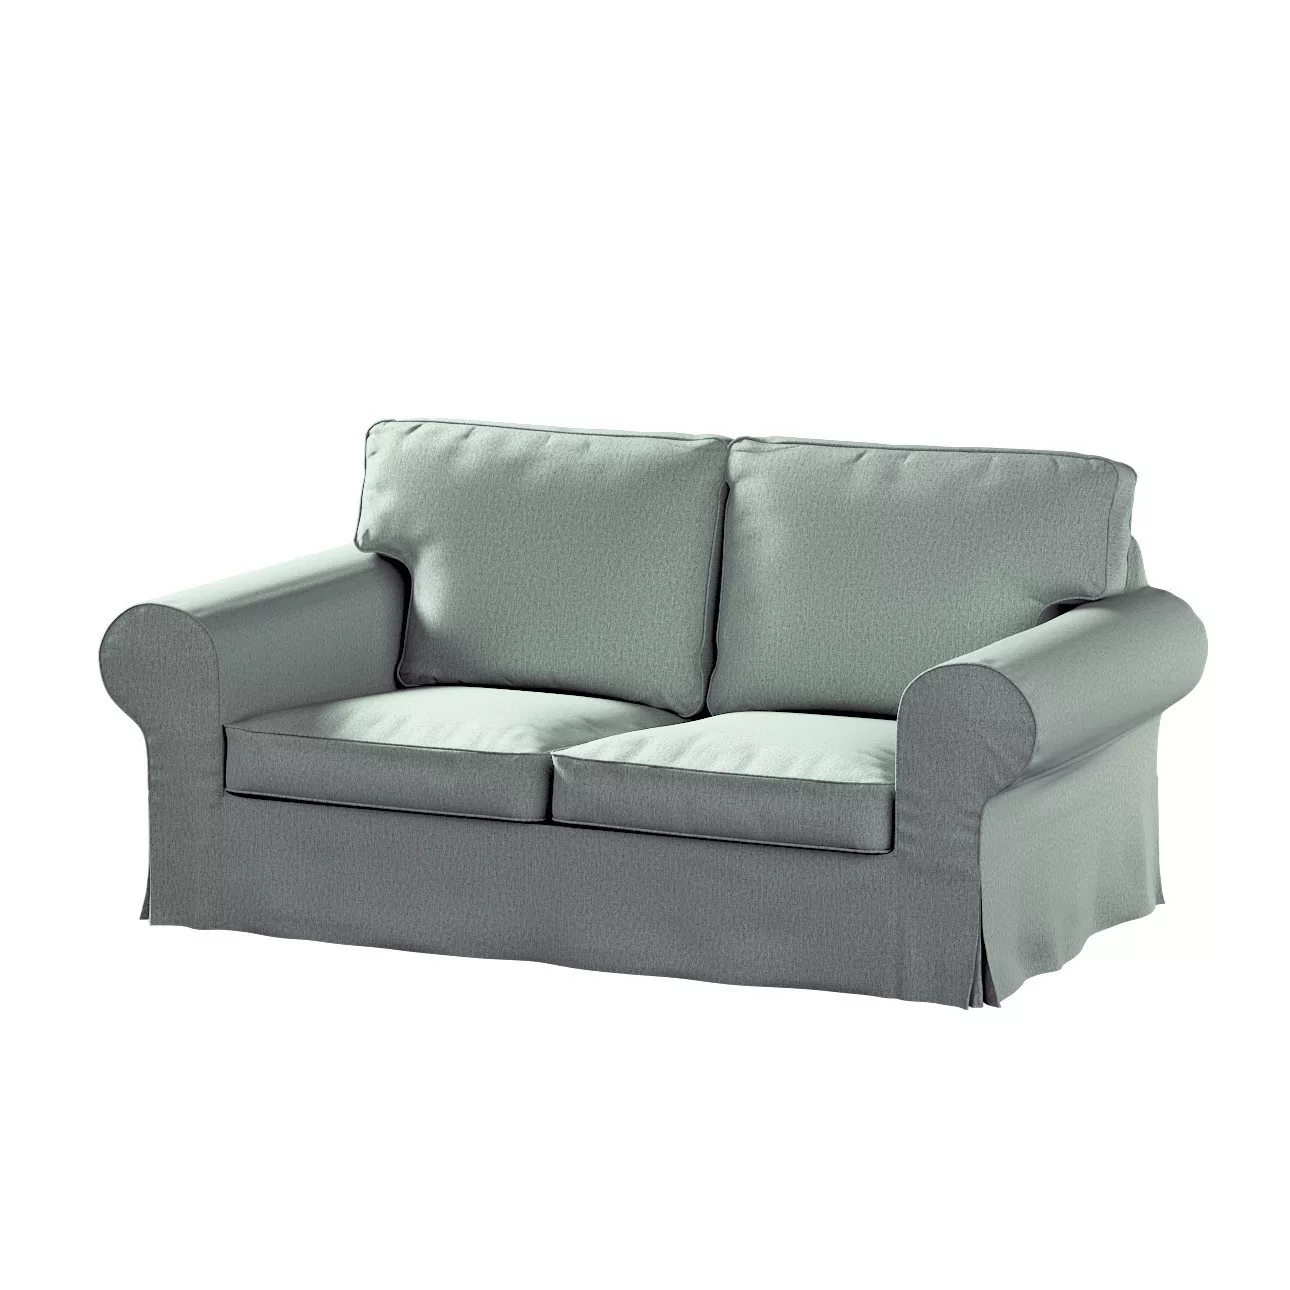 Bezug für Ektorp 2-Sitzer Schlafsofa NEUES Modell, eukalyptusgrün, Sofabezu günstig online kaufen